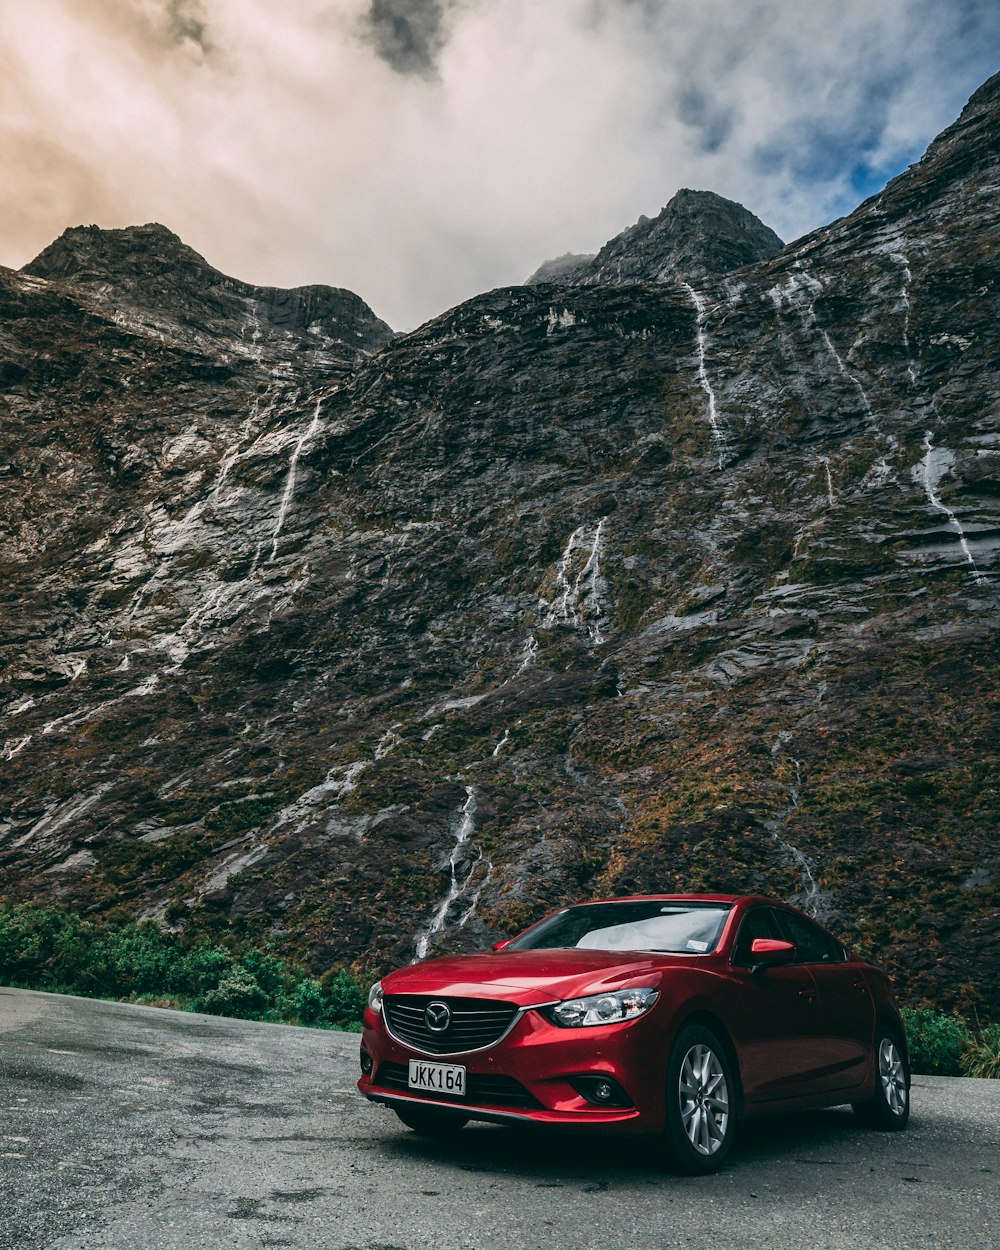 Vehículo Mazda rojo